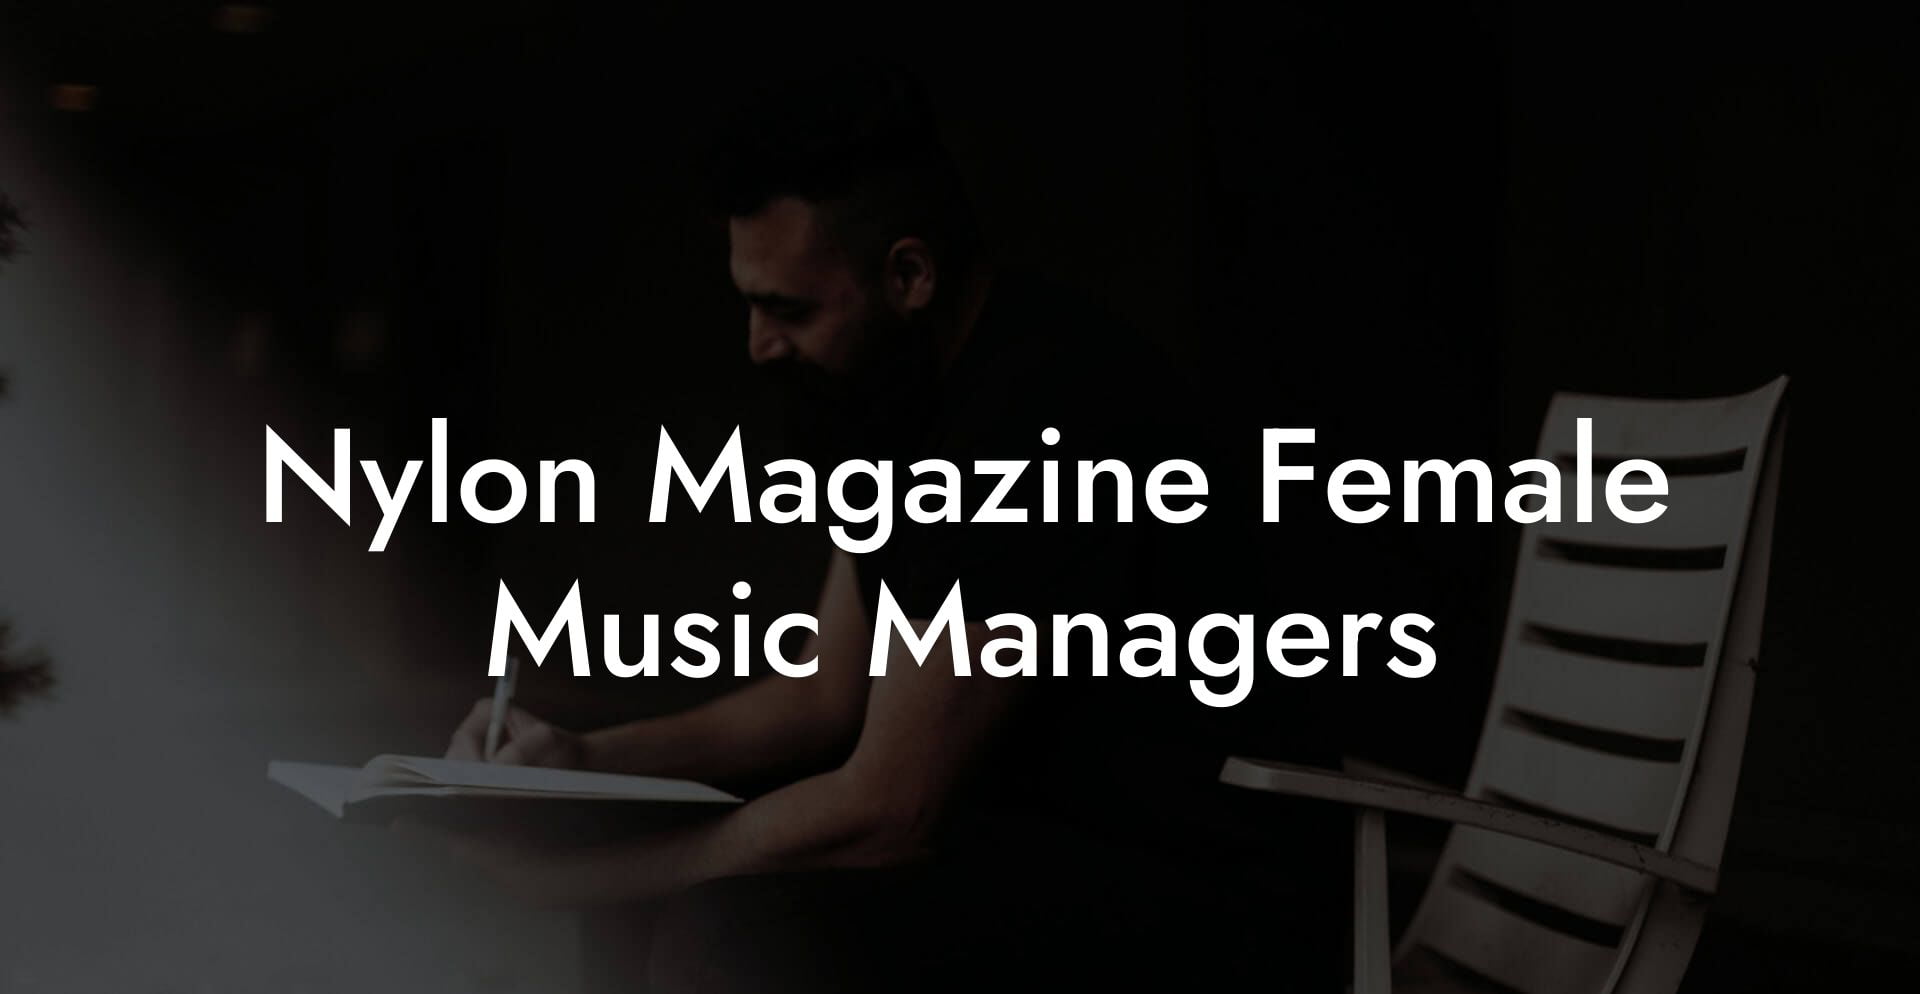 Nylon Magazine Female Music Managers